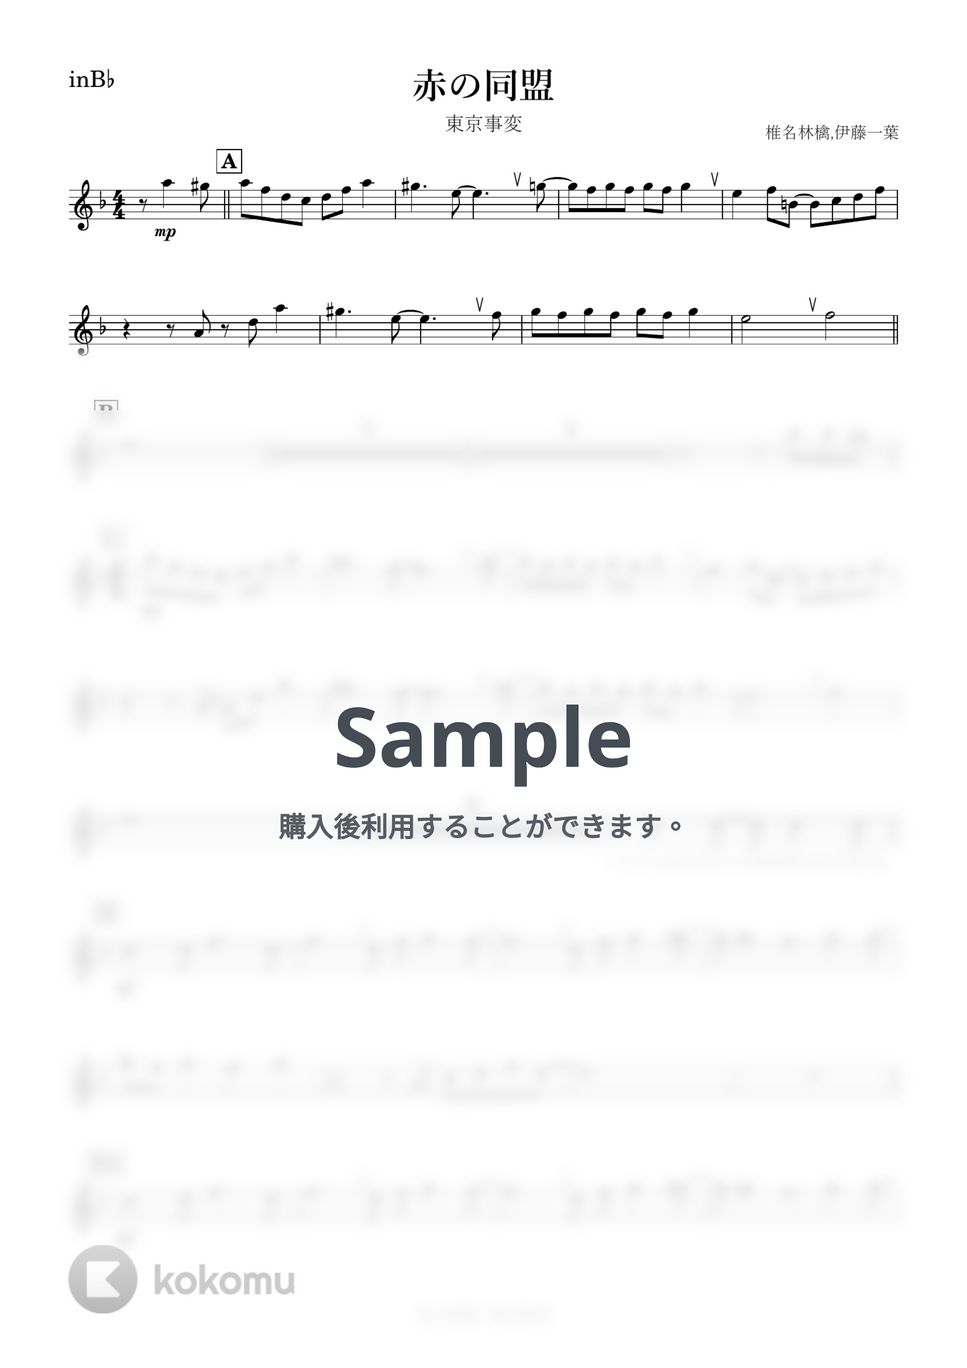 東京事変 - 赤の同盟 (B♭) by kanamusic